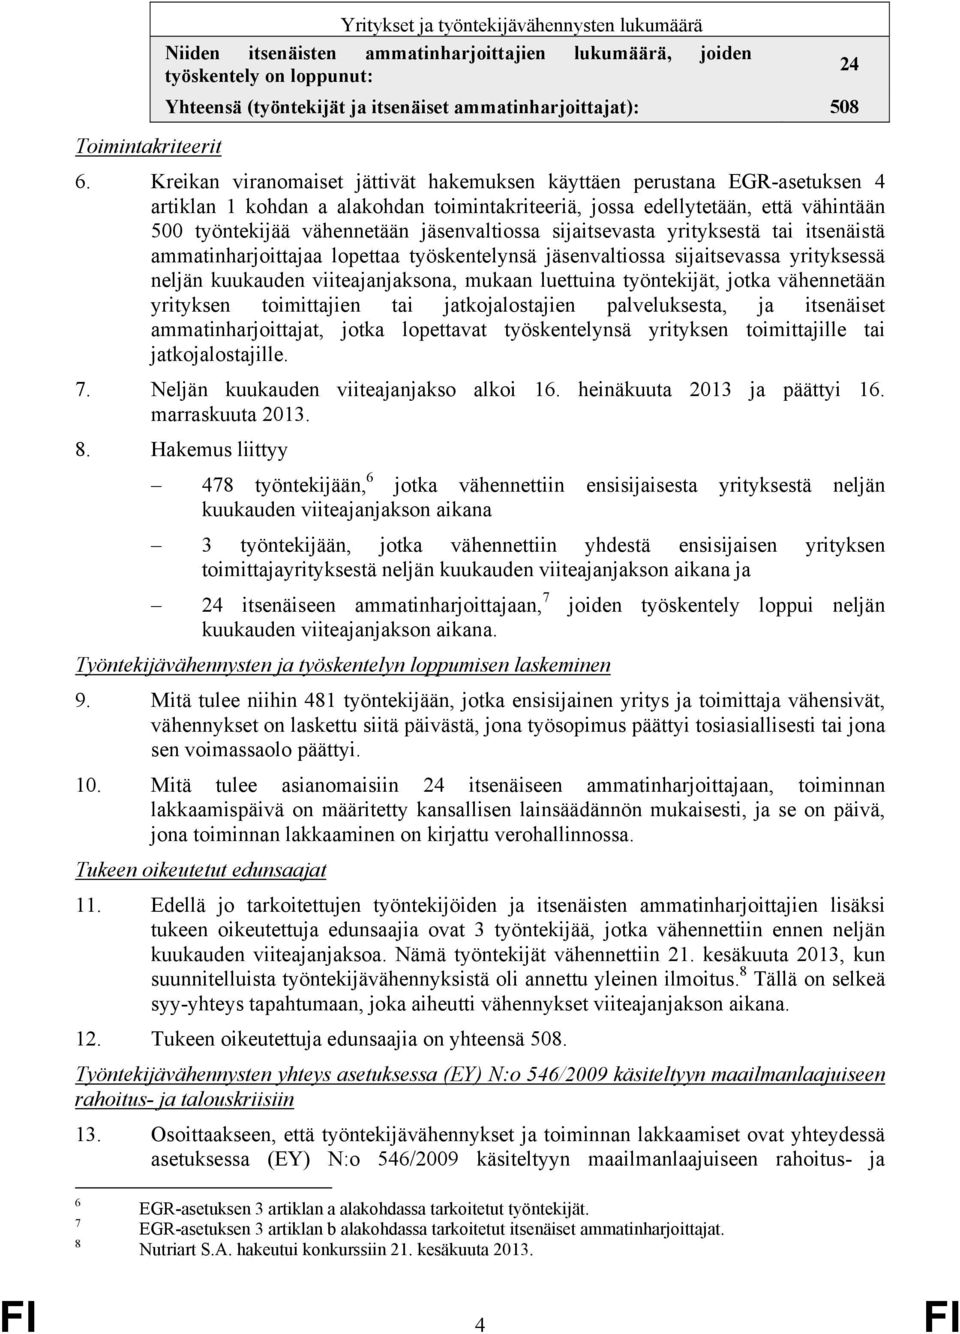 Kreikan viranomaiset jättivät hakemuksen käyttäen perustana EGR-asetuksen 4 artiklan 1 kohdan a alakohdan toimintakriteeriä, jossa edellytetään, että vähintään 500 työntekijää vähennetään